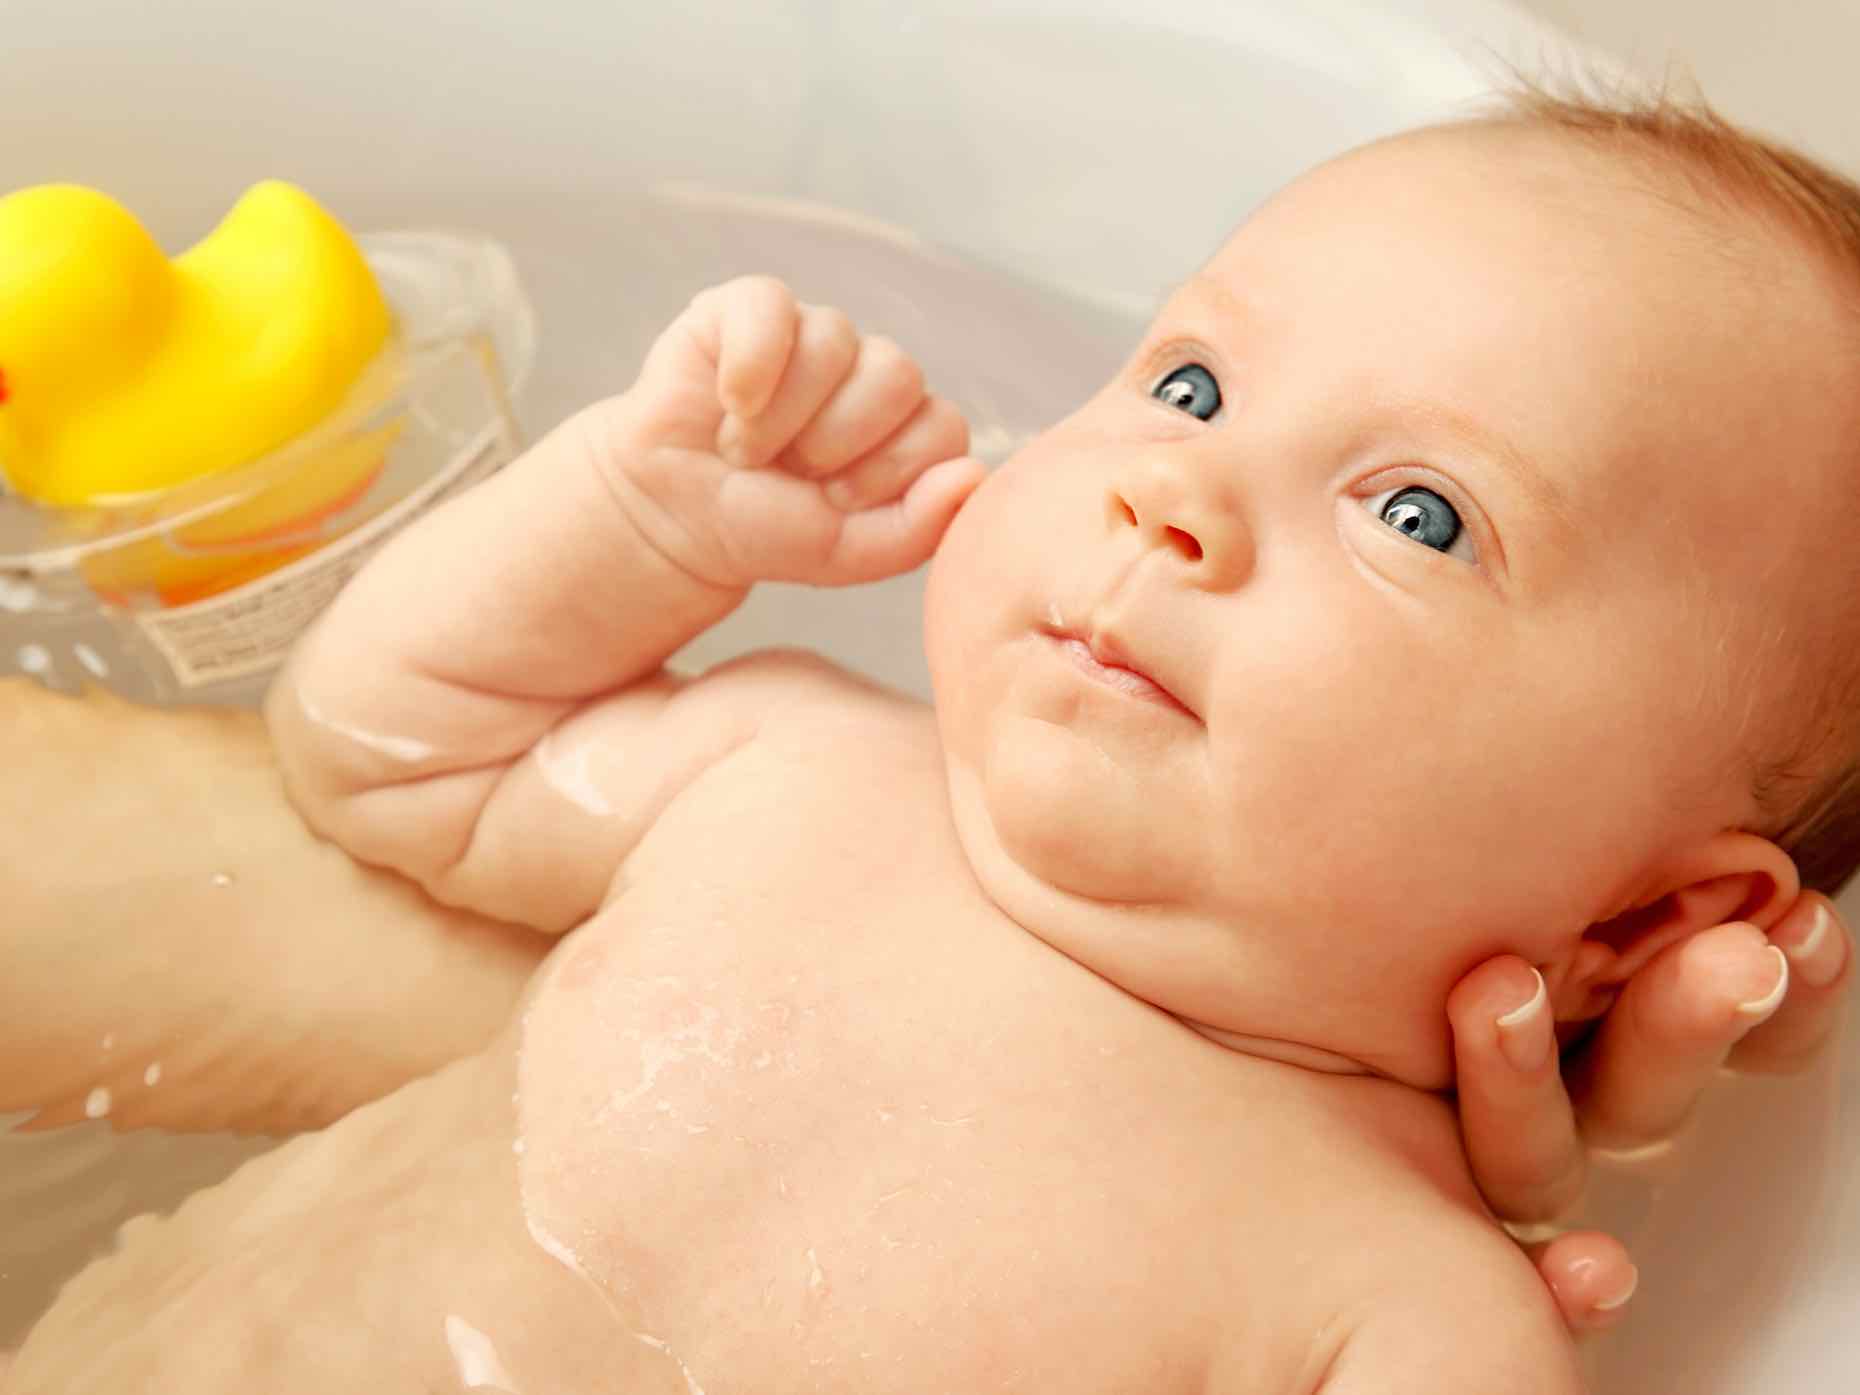 Quali detergenti per lavare i bambini? - Amico Pediatra